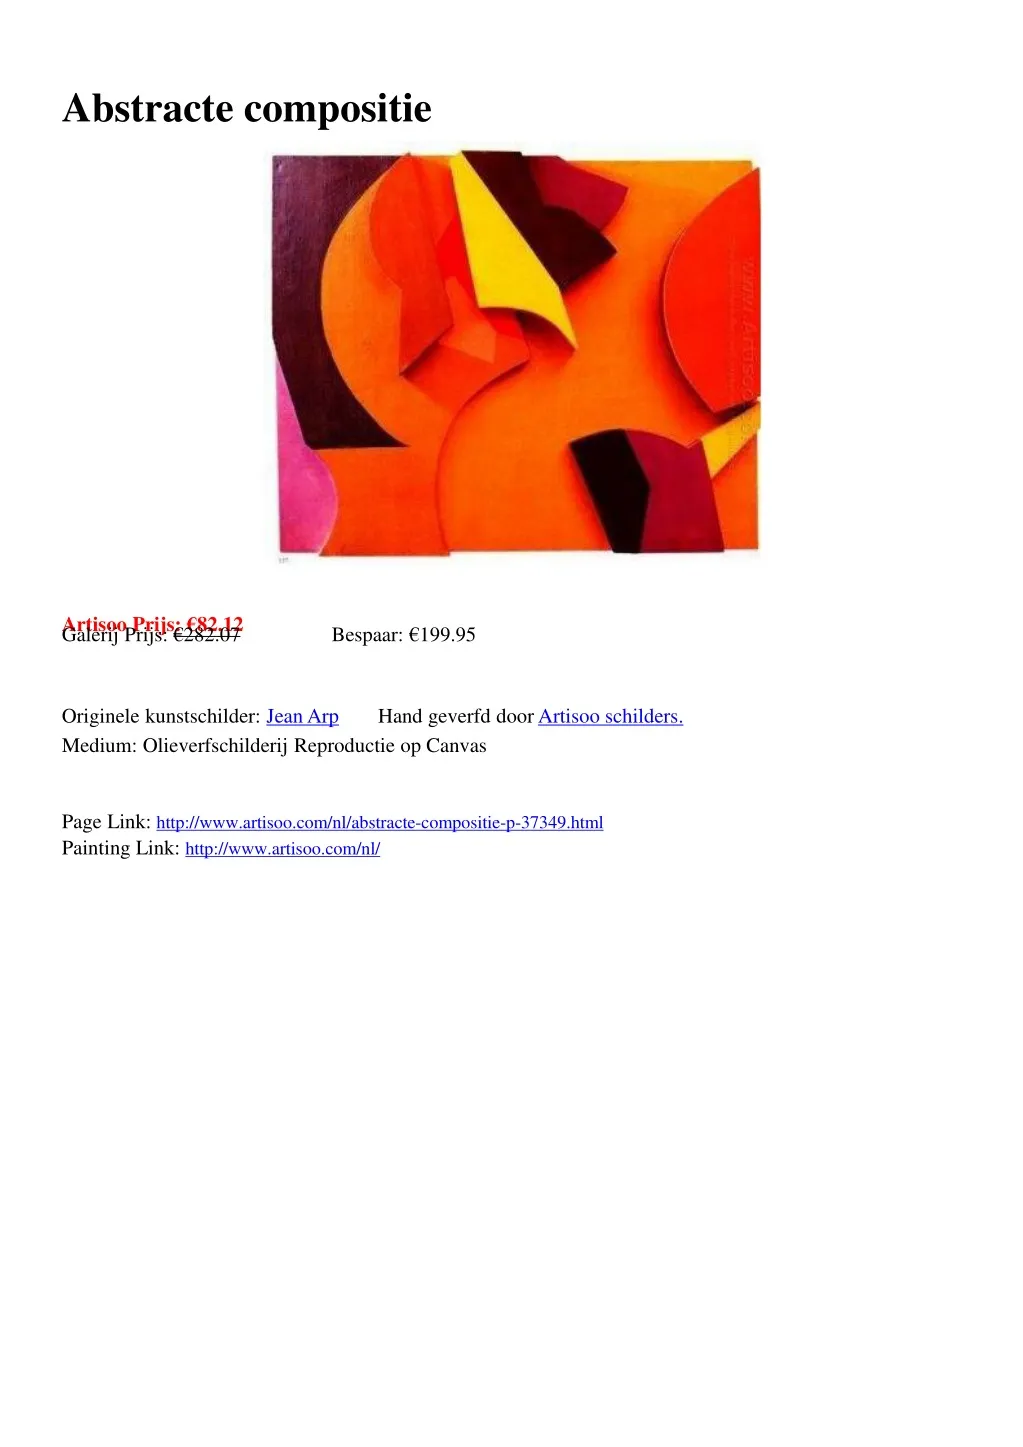 abstracte compositie arti soo prijs 82 12